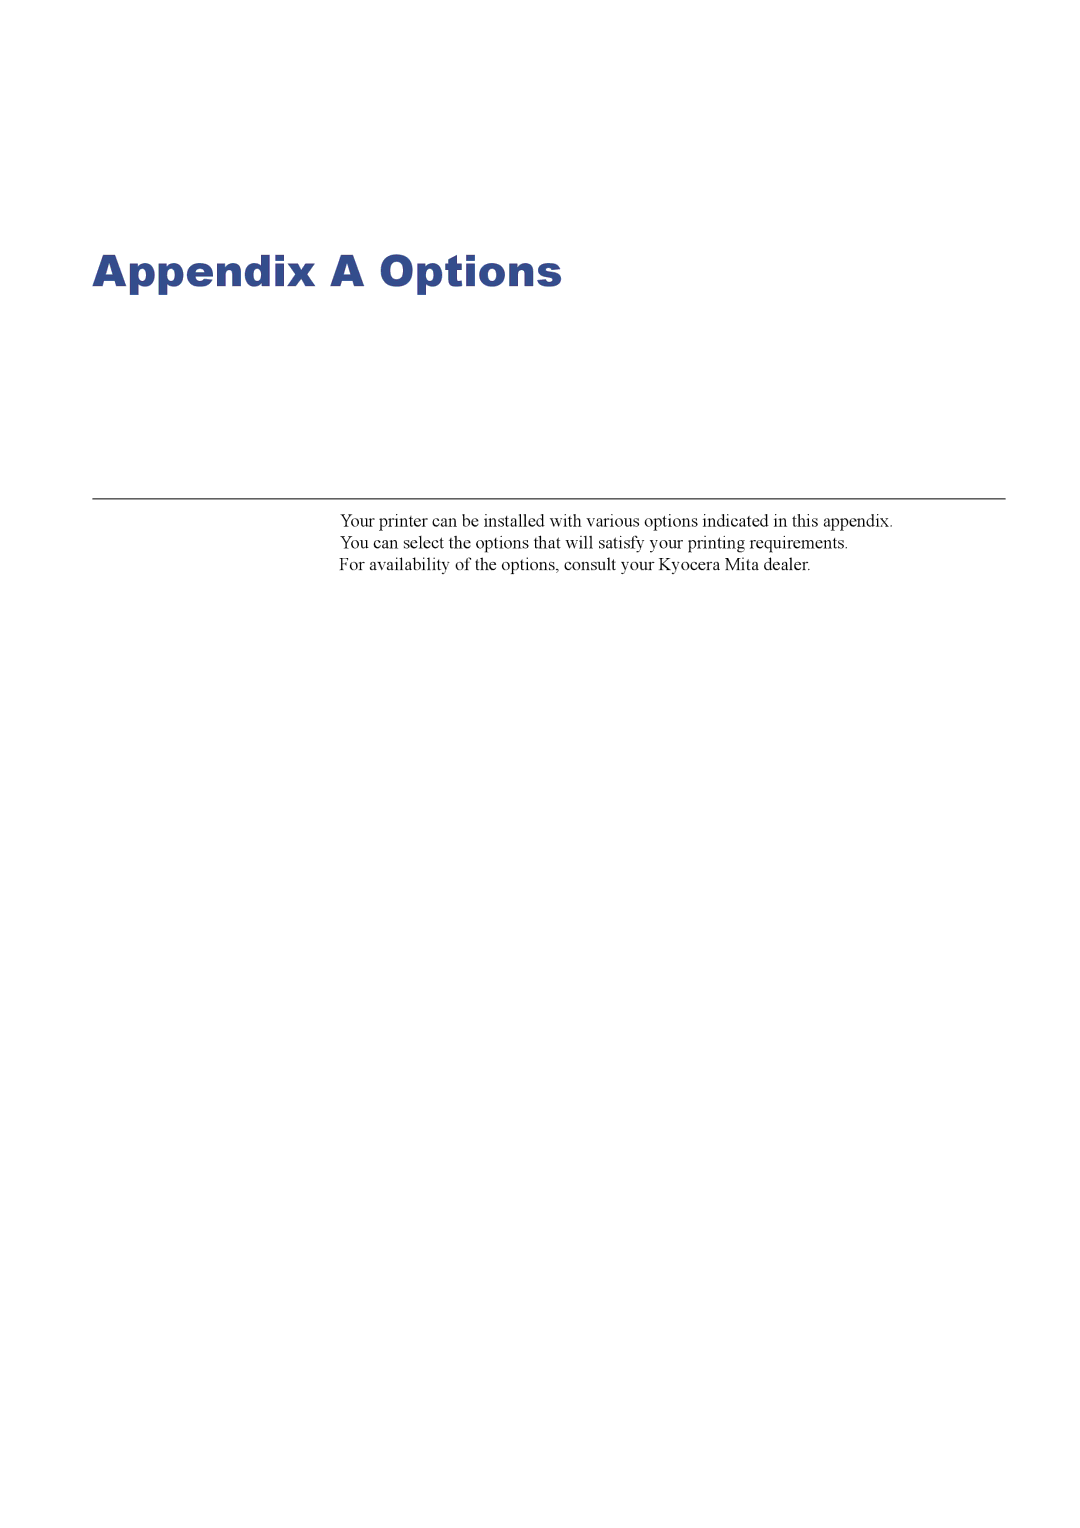 Kyocera FS-C8026N manual Appendix a Options 